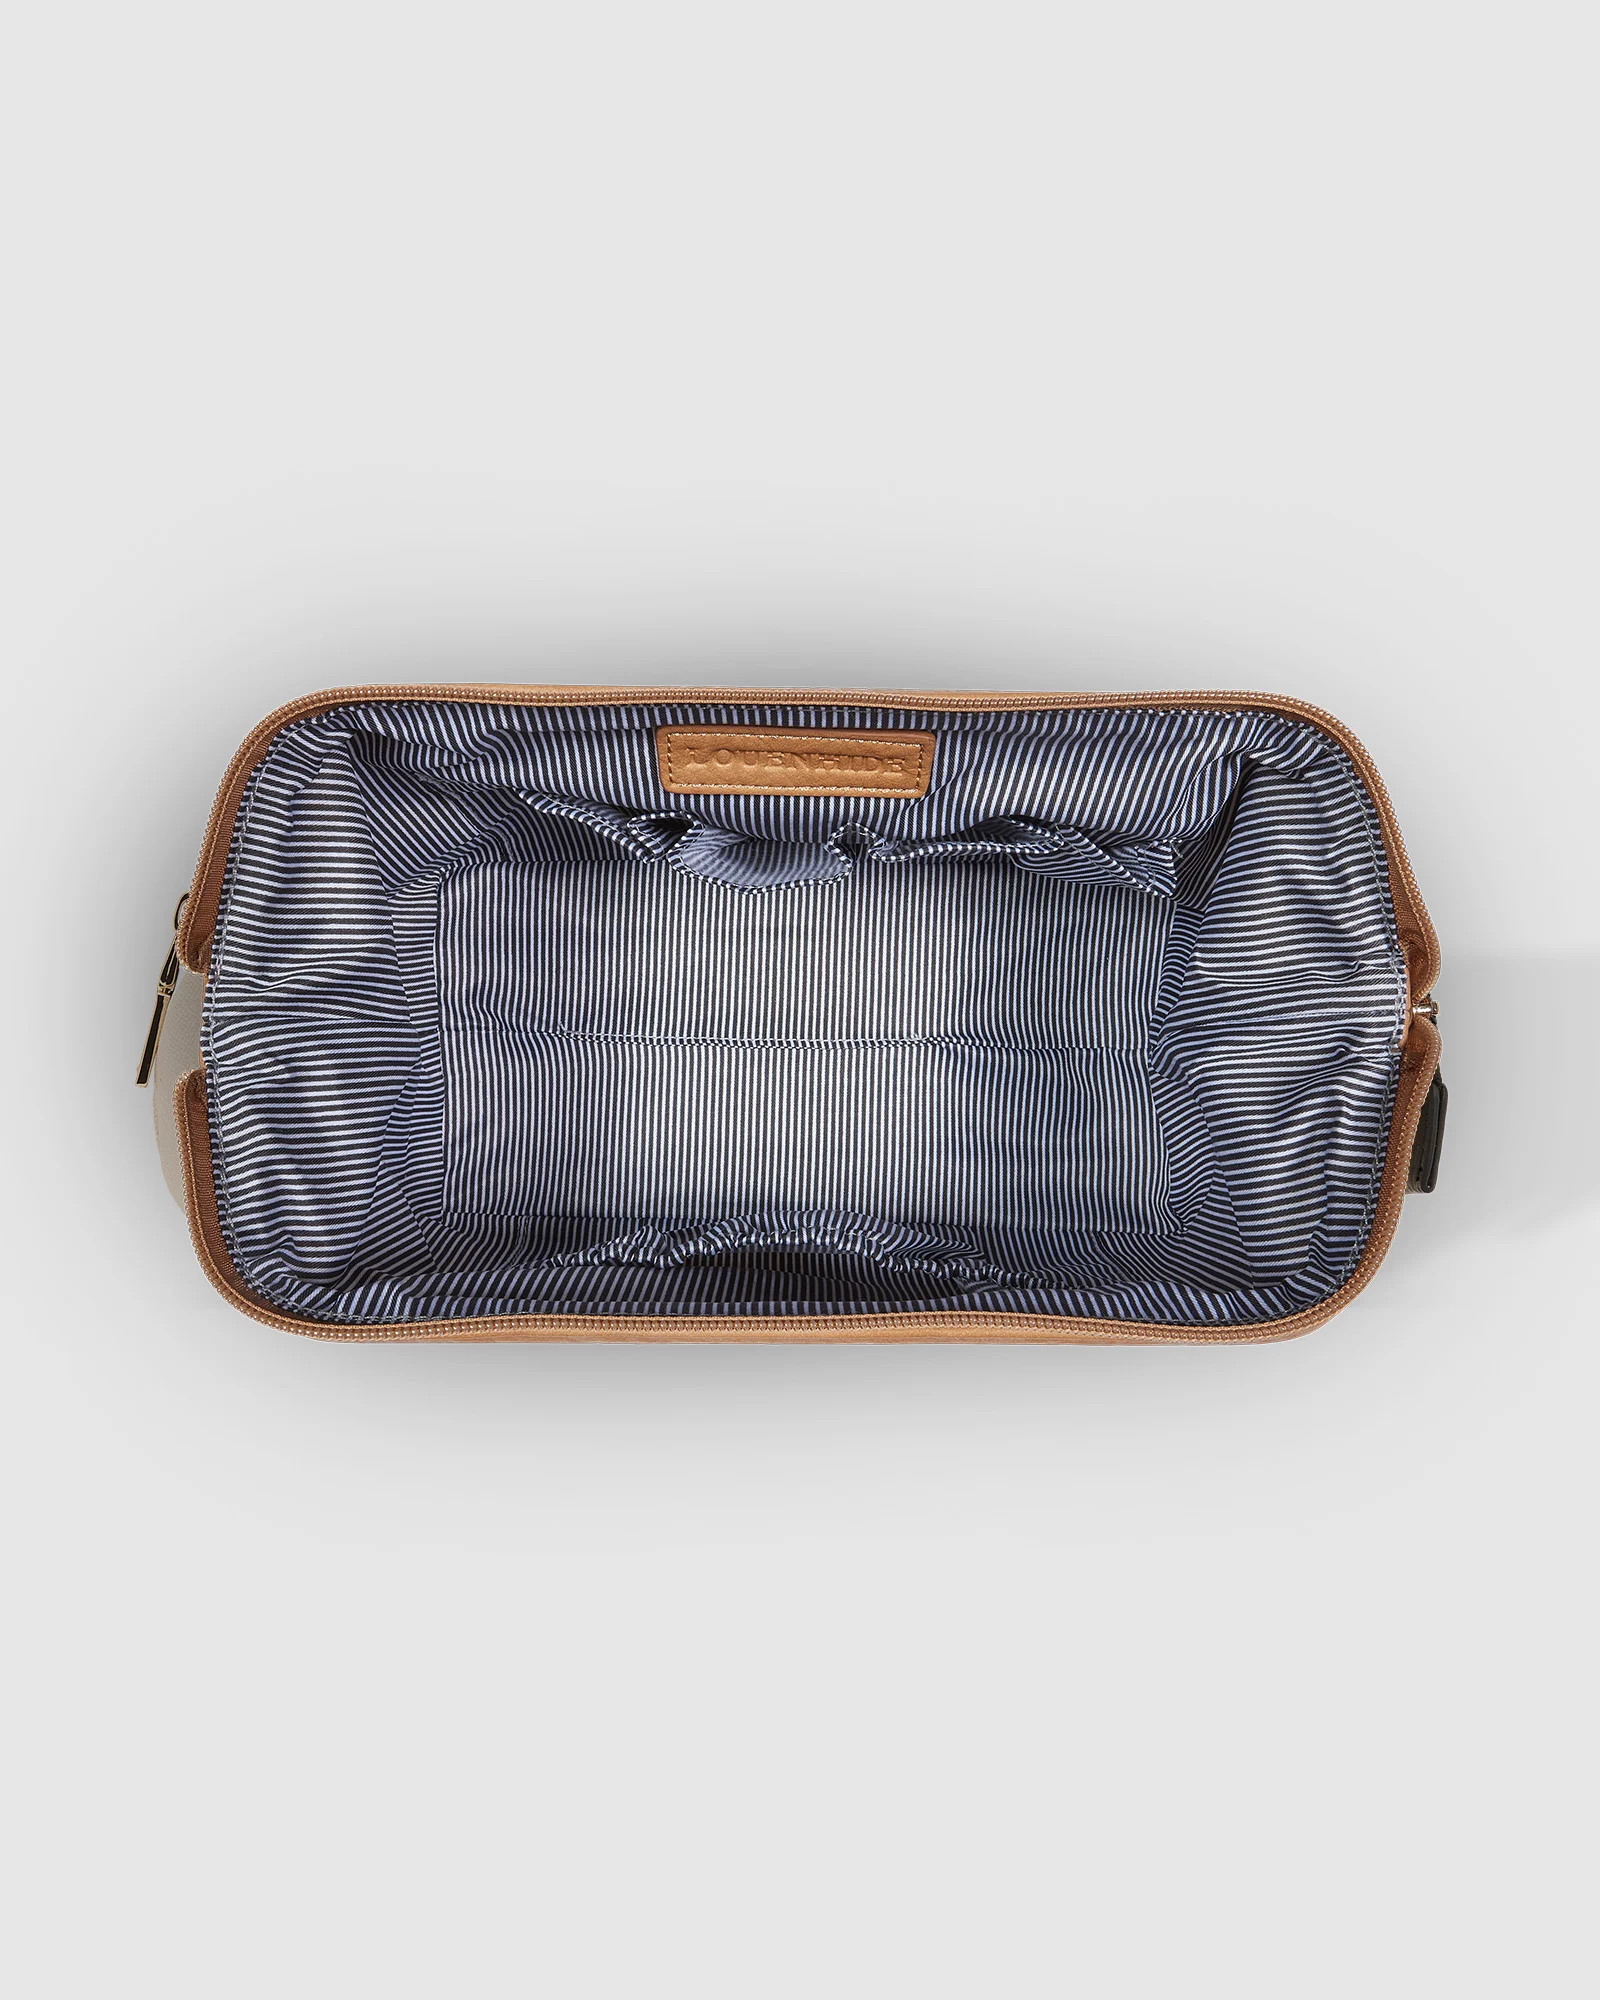 Louenhide Hansel Makeup Bag - Cream/Camel Accessories - Other Accessories - Handbags & Wallets by Louenhide | Grace the Boutique